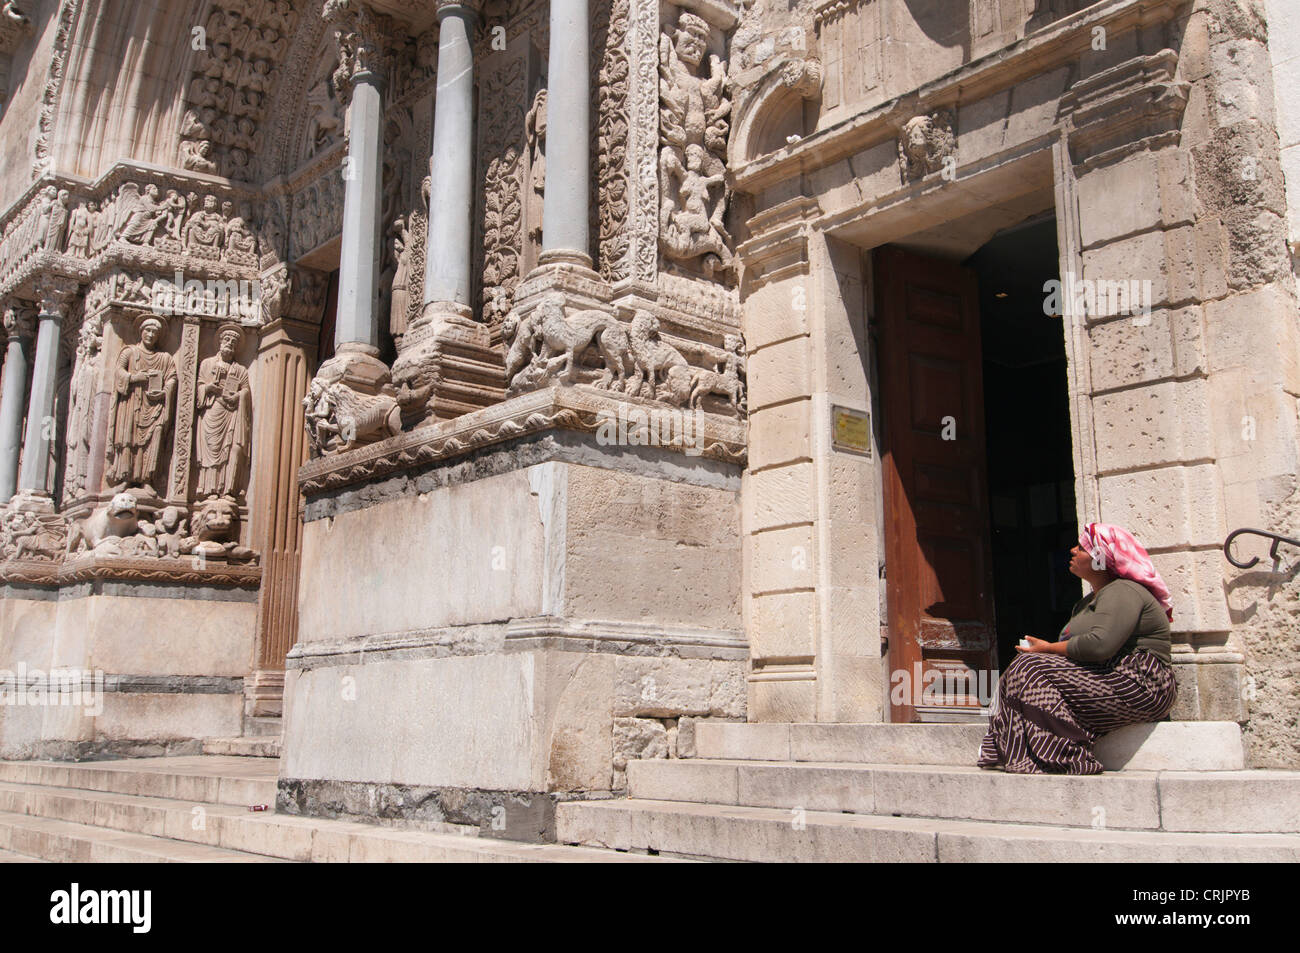 Gypsy Woman et la mendicité en face de l'église Saint Trophime, France, Provence, Camargue, Arles Banque D'Images